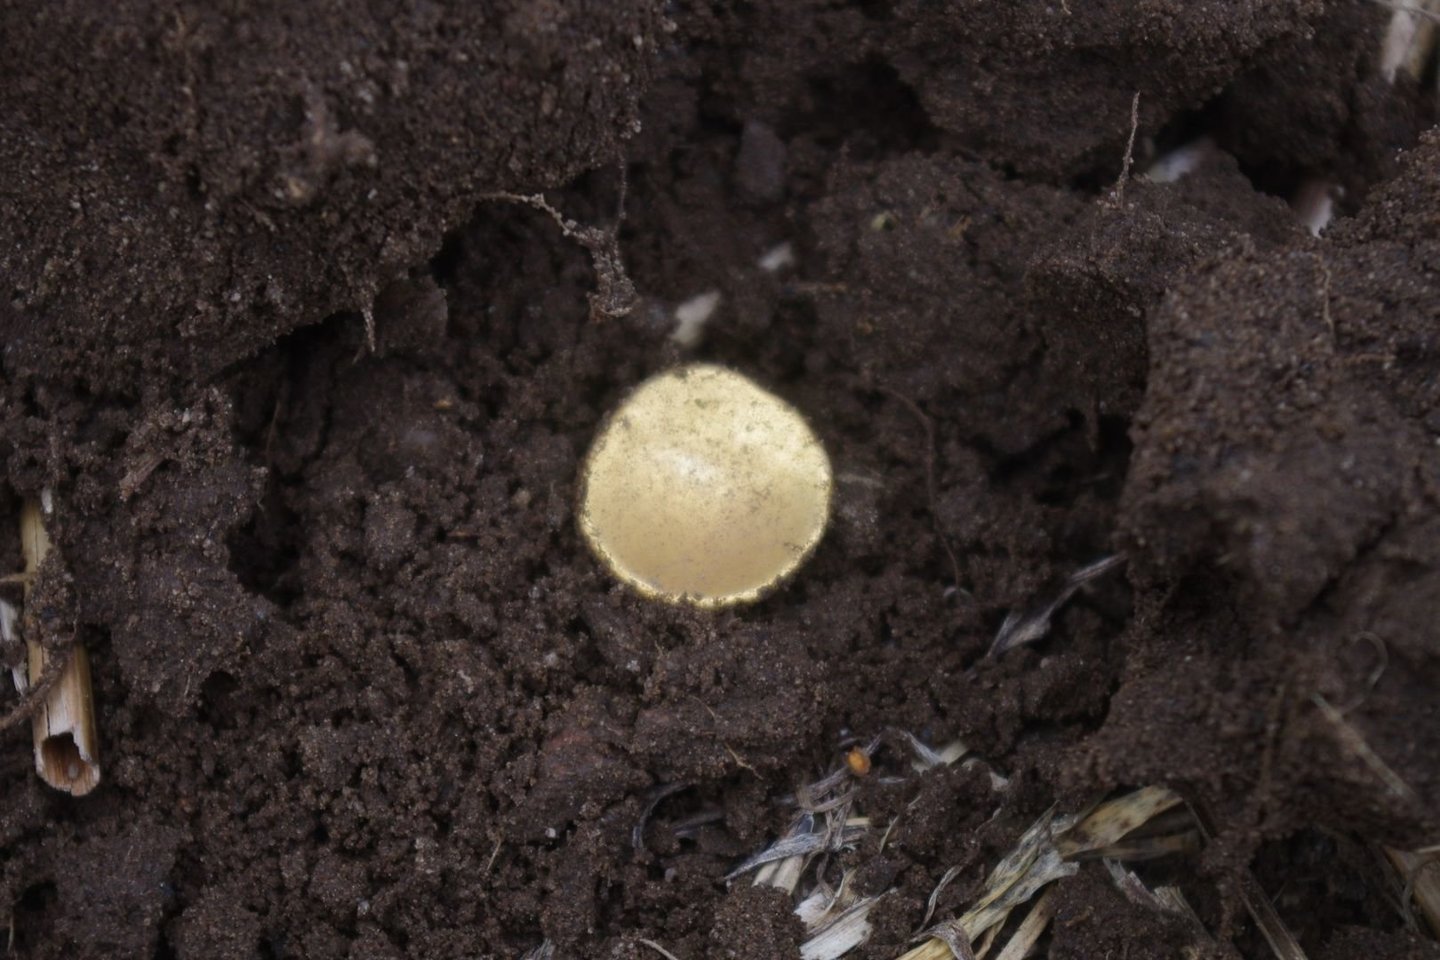   Rasta pirmoji moneta priminė nedidelio alkoholio buteliuko dangtelį. Tačiau tai buvo keltų auksinė moneta.<br> W. Herkto nuotr.